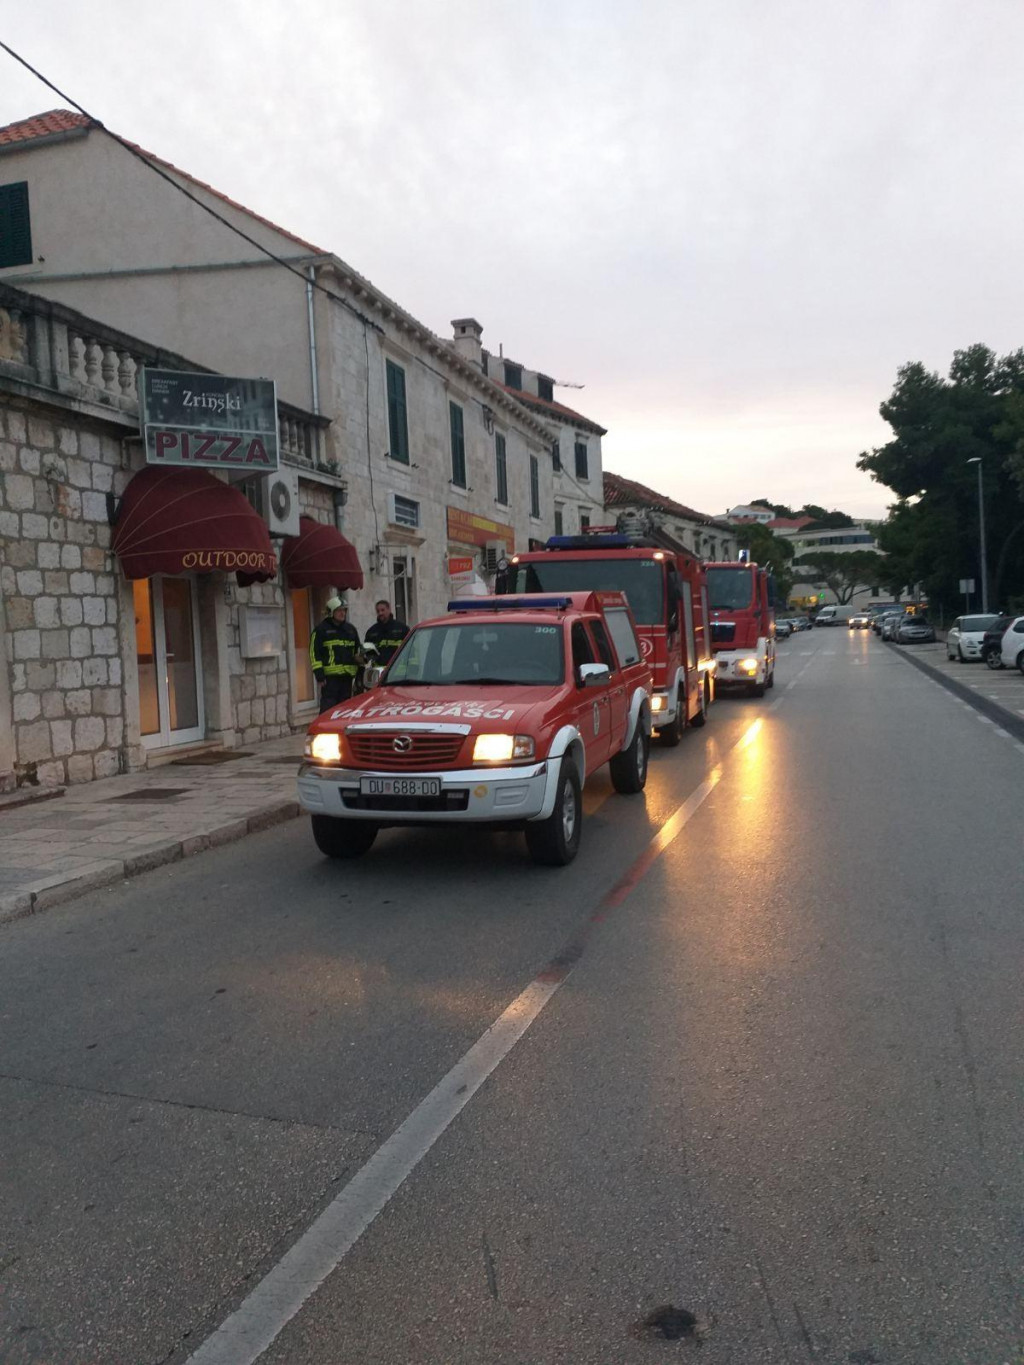 Vatrogasci su intervenirali i ugasili požar u restoranu Zrinski